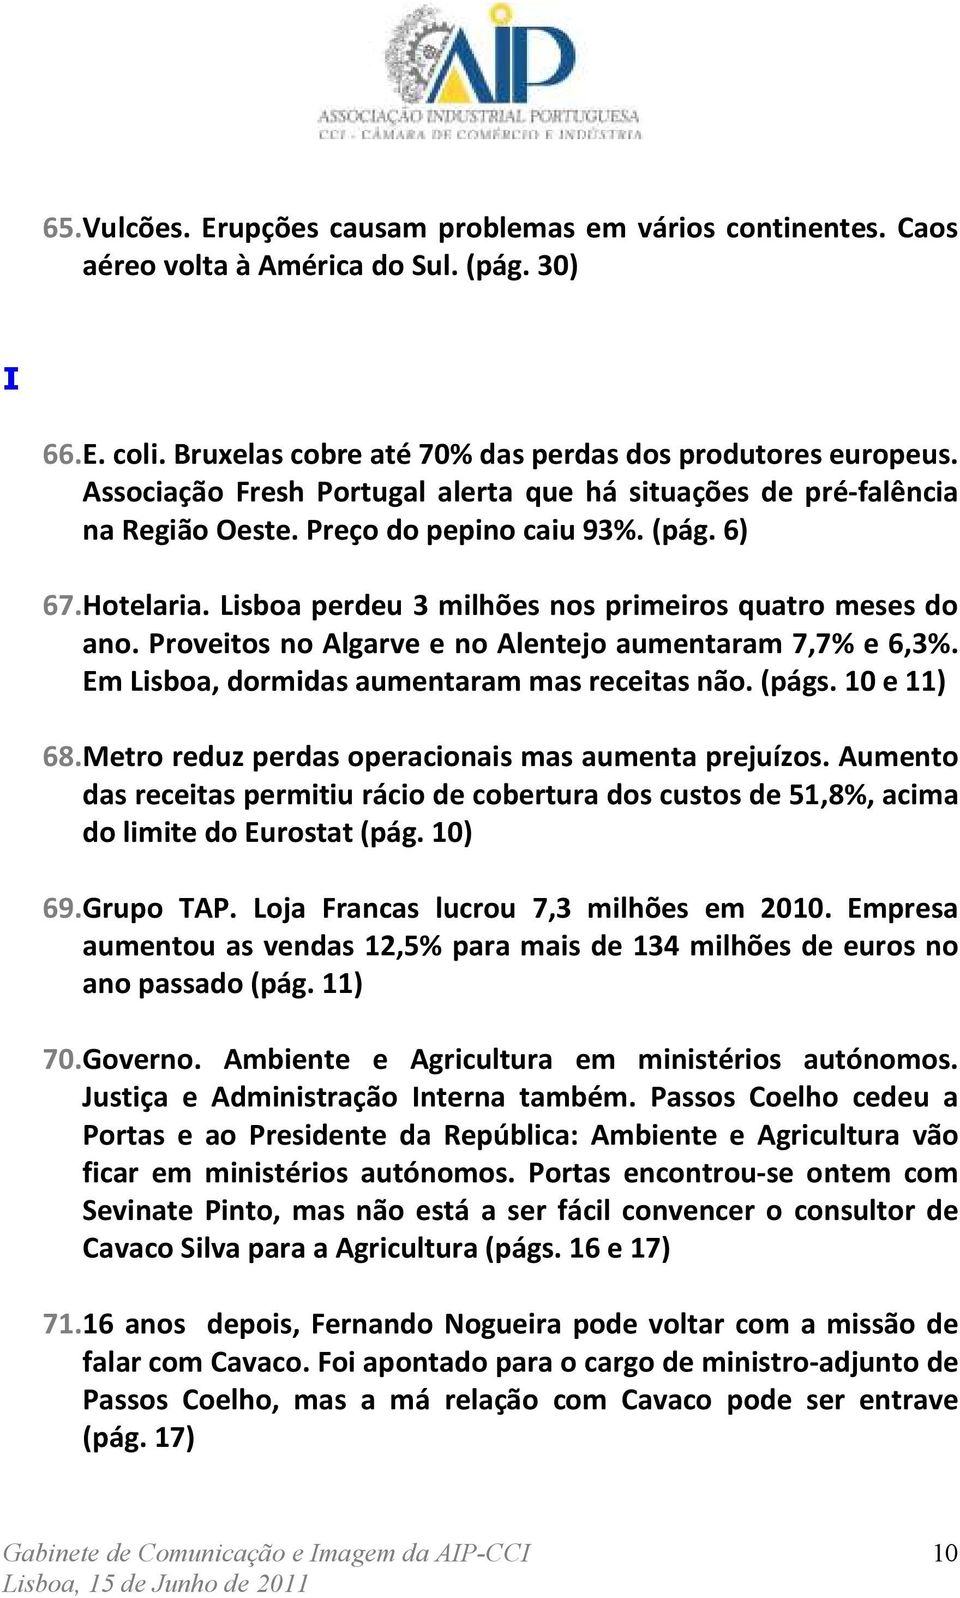 Proveitos no Algarve e no Alentejo aumentaram 7,7% e 6,3%. Em Lisboa, dormidas aumentaram mas receitas não. (págs. 10 e 11) 68. Metro reduz perdas operacionais mas aumenta prejuízos.